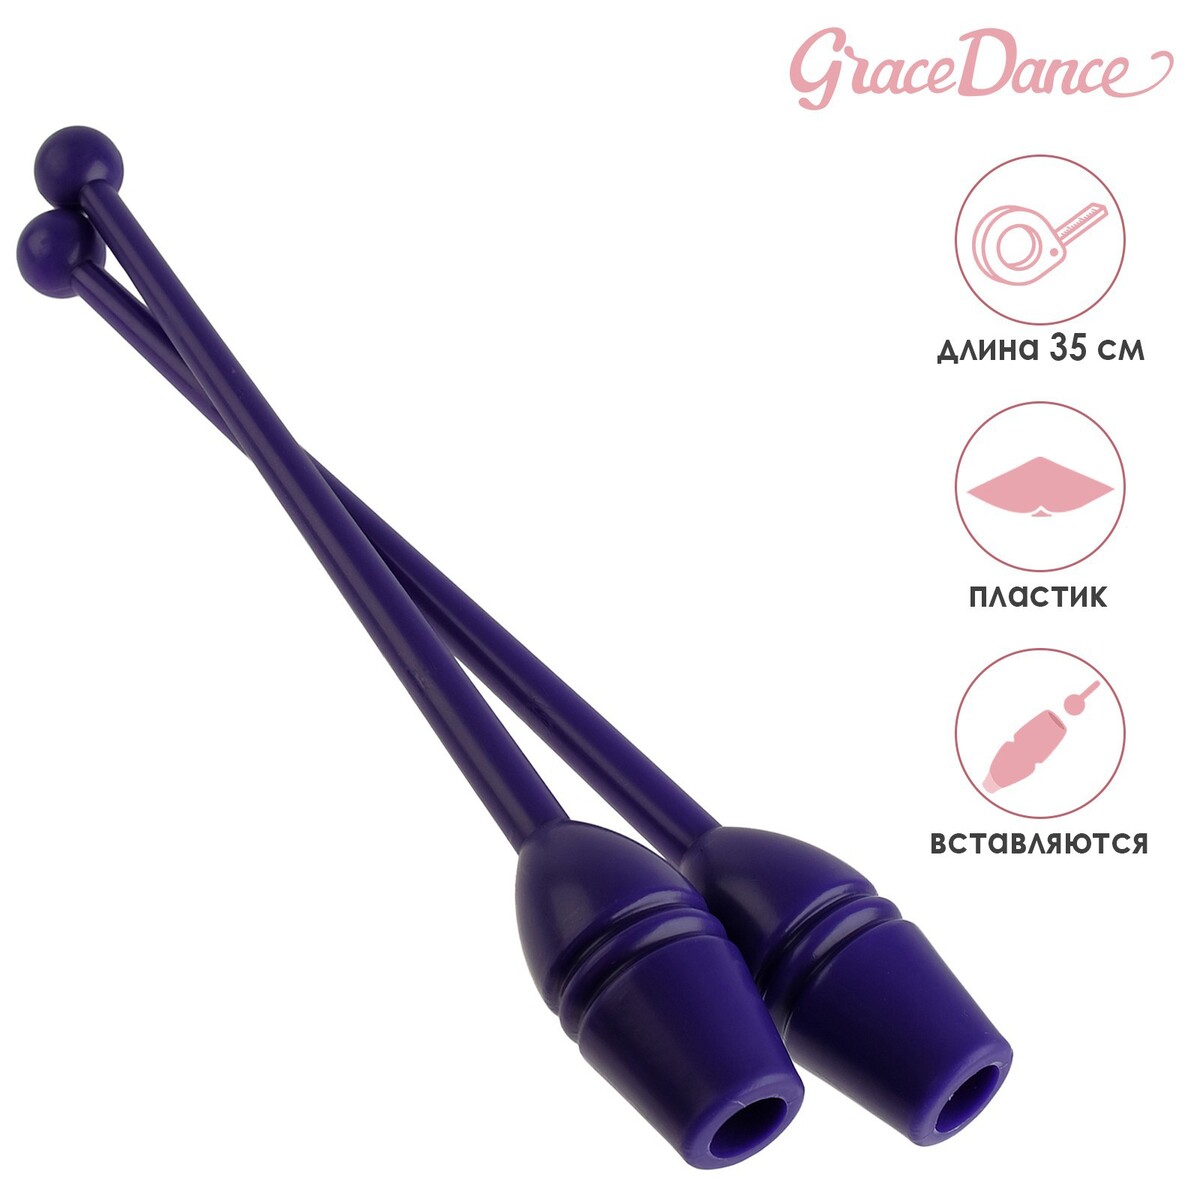 Булавы гимнастические вставляющиеся grace dance, 35 см, цвет фиолетовый булавы для художественной гимнастики indigo 41 см